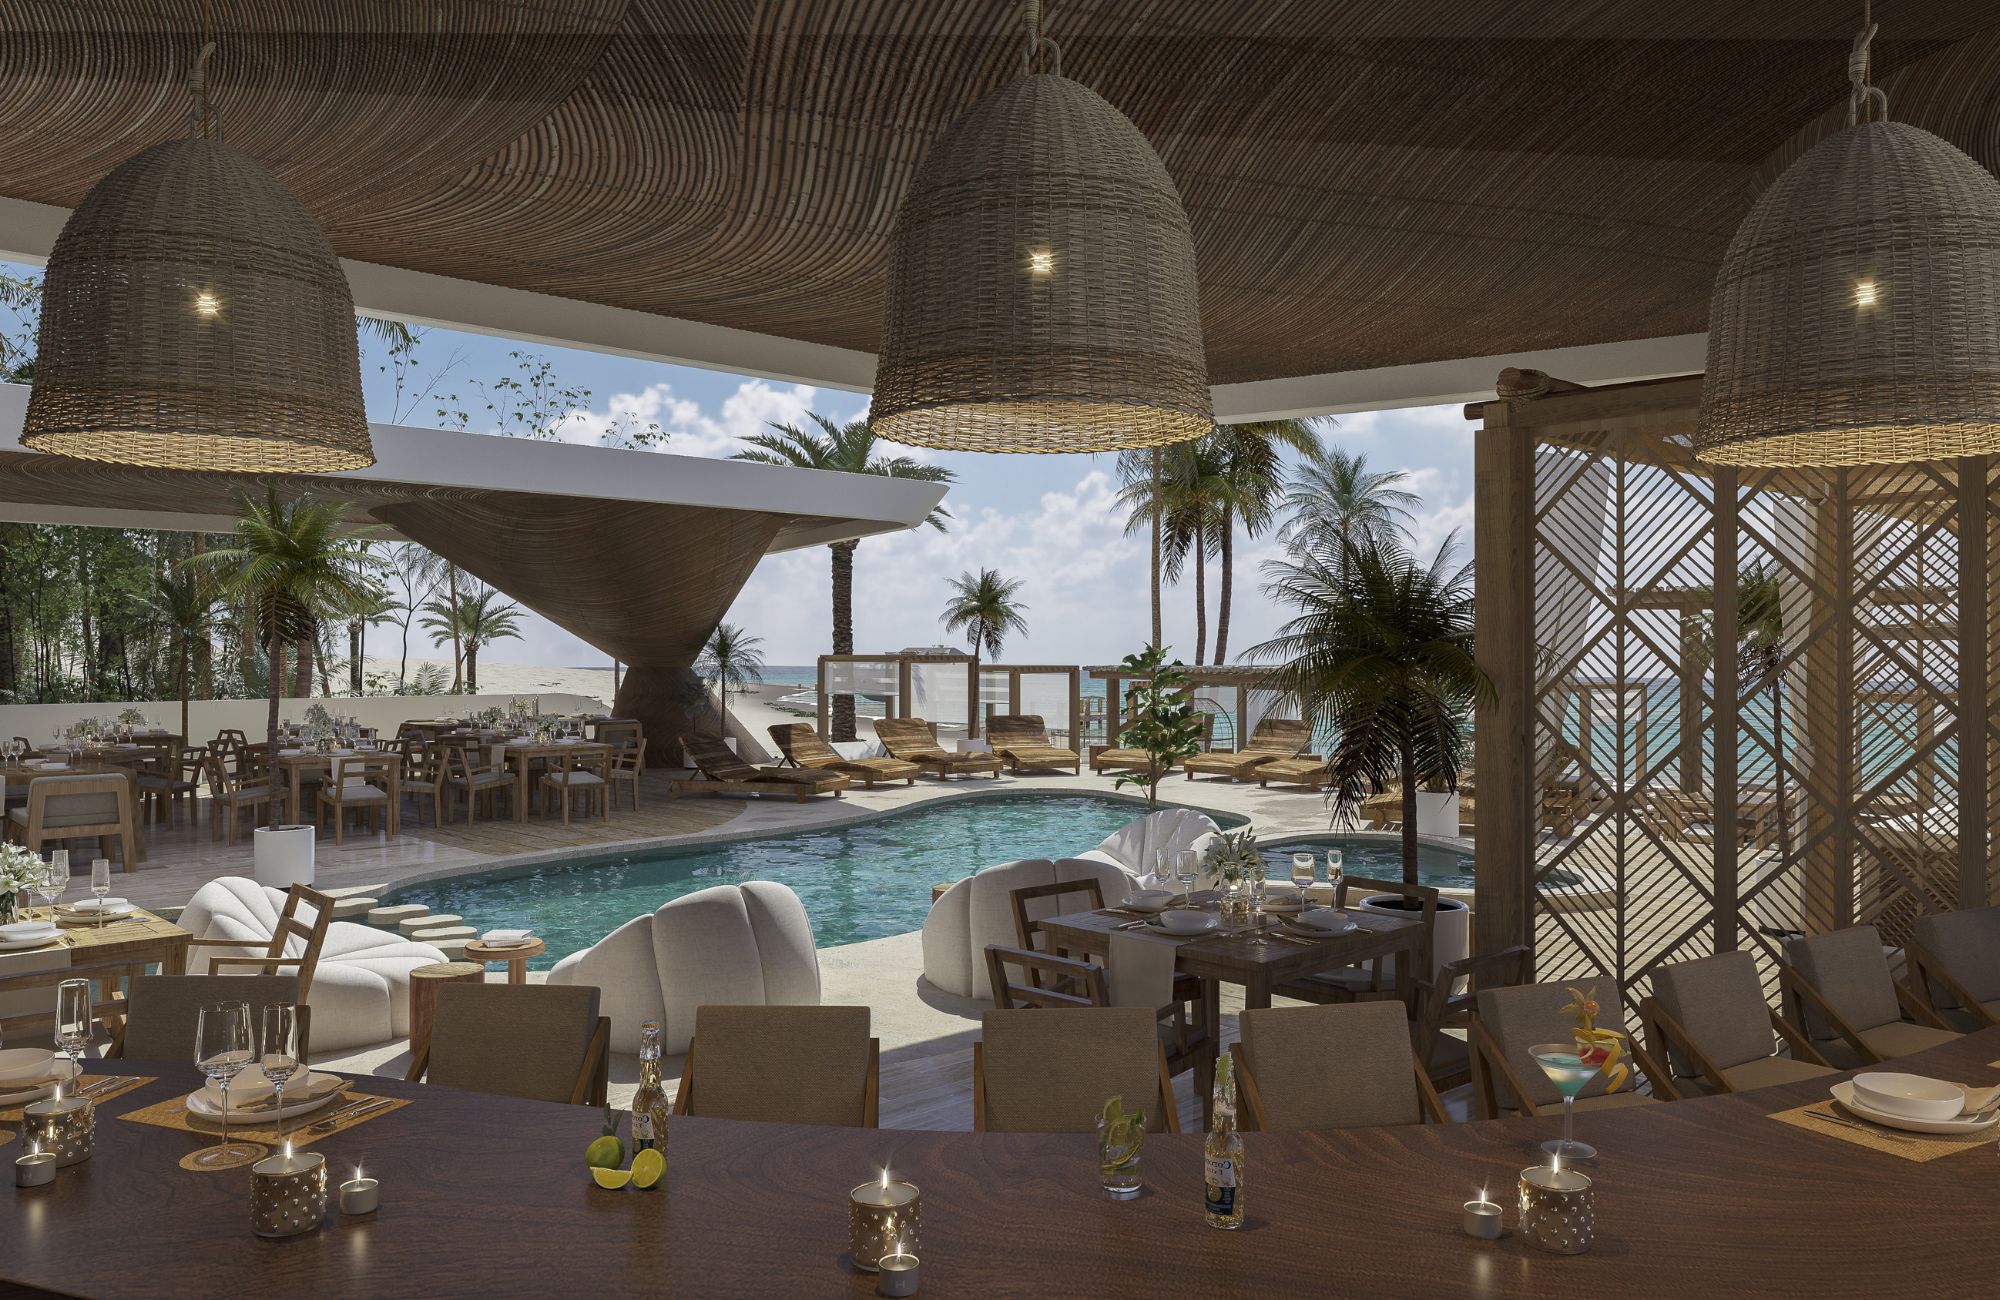 Condominio amplio 214 m2, piso de mármol, en residencial privado, con alberca, gimnasio, area de asador, en venta, Cumbres Cancun.